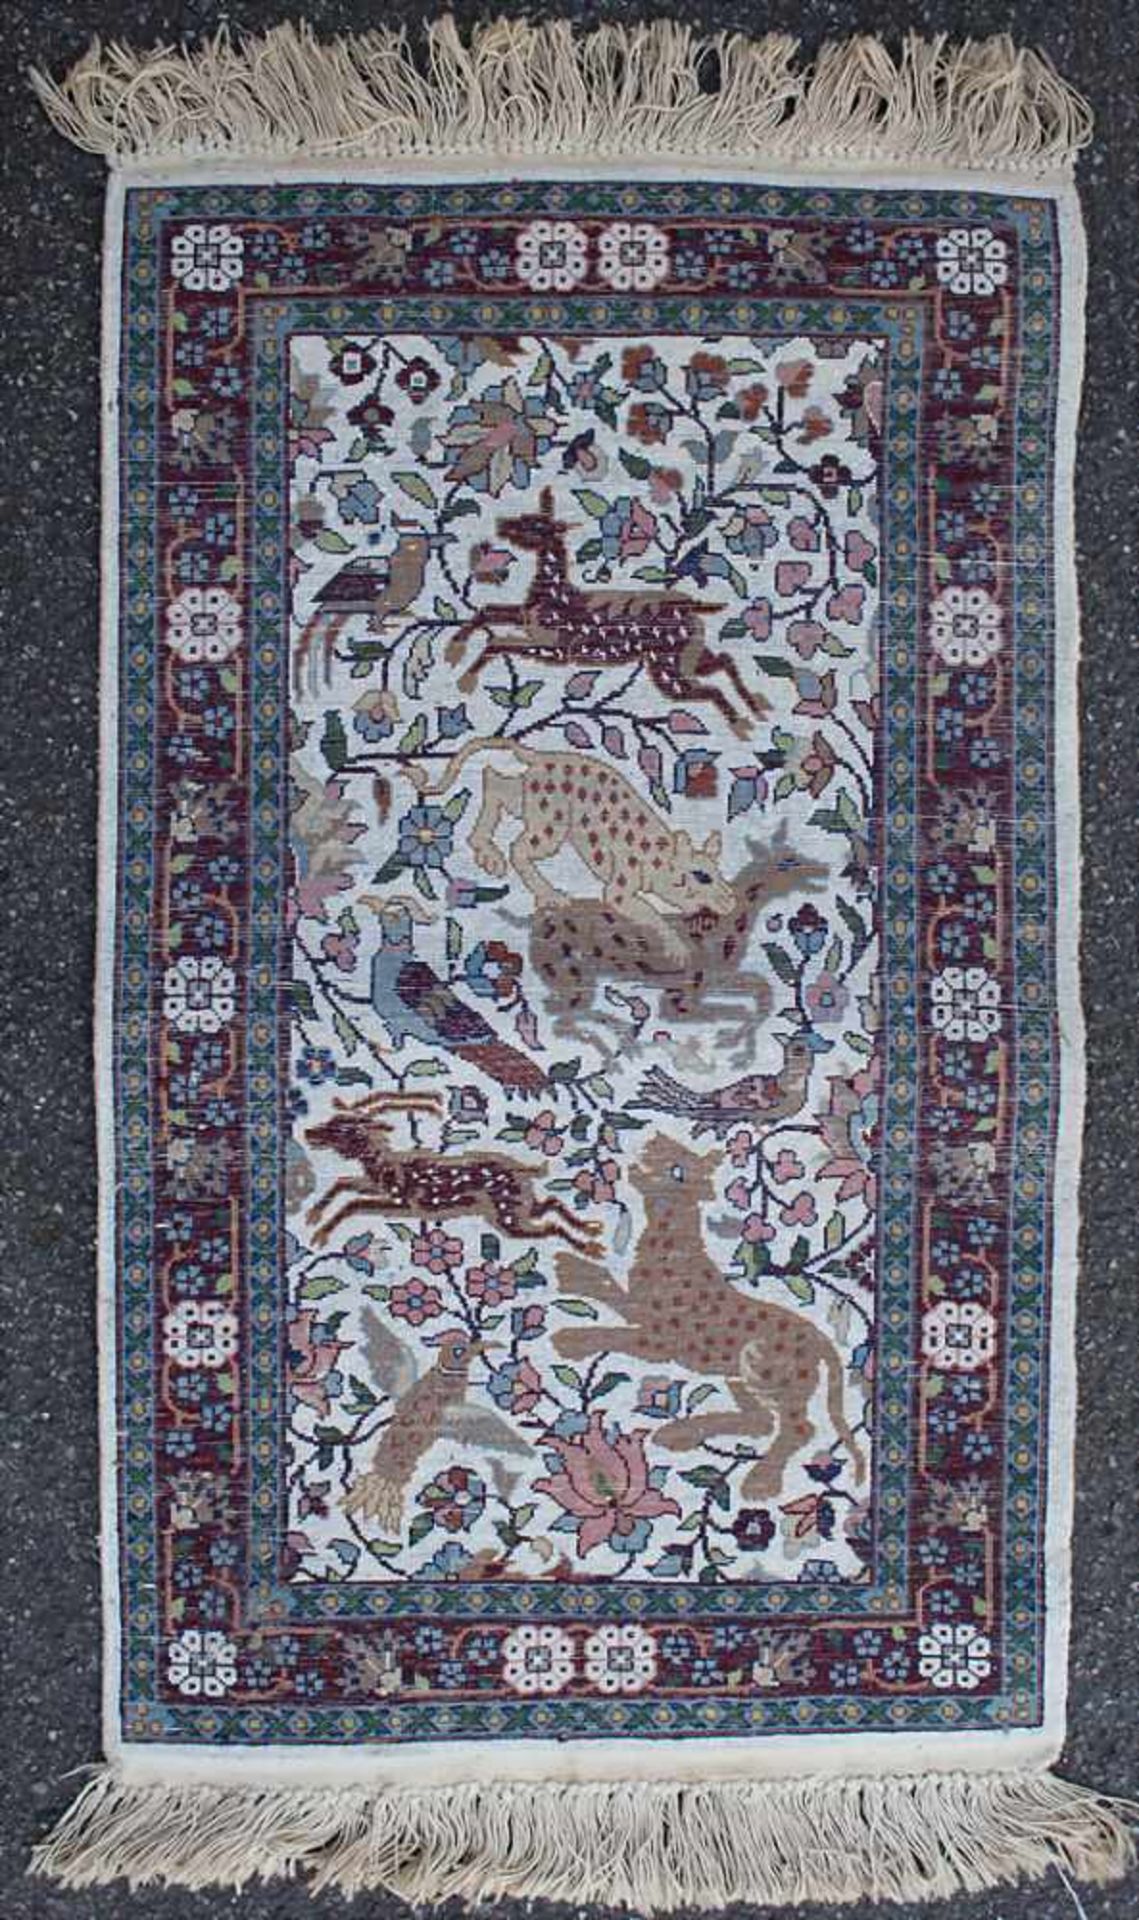 Teppich / Brücke / A carpet, 20. Jh.Material: Kaschmirseide,Dekor: zentrales Medaillon mit Tieren, - Image 3 of 4